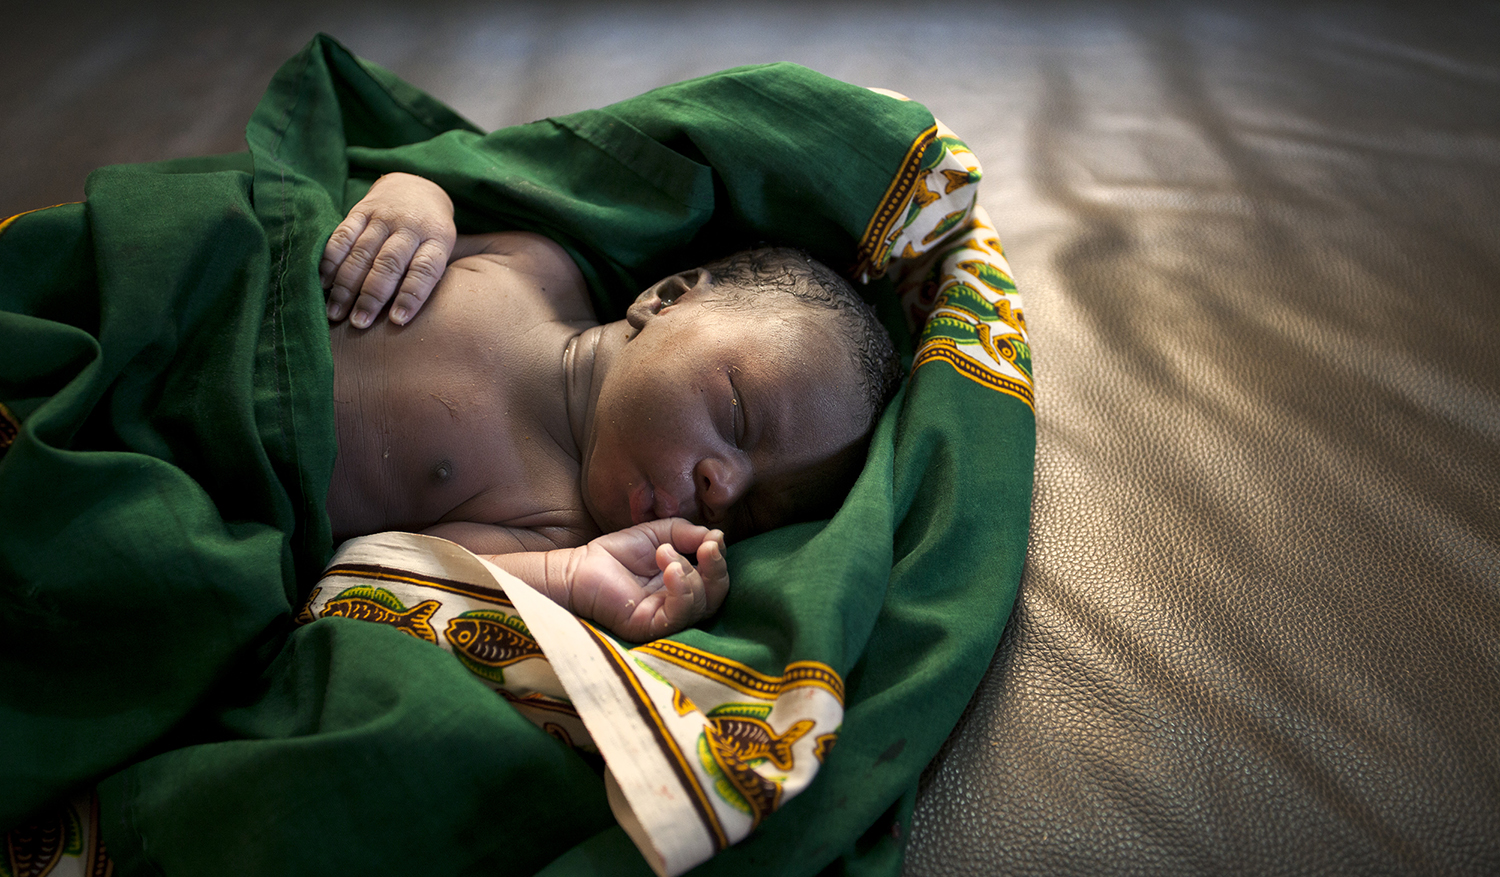 Mali_Newborn-Asacoba-health-clinic-Dominic-Chavez-World-Bank